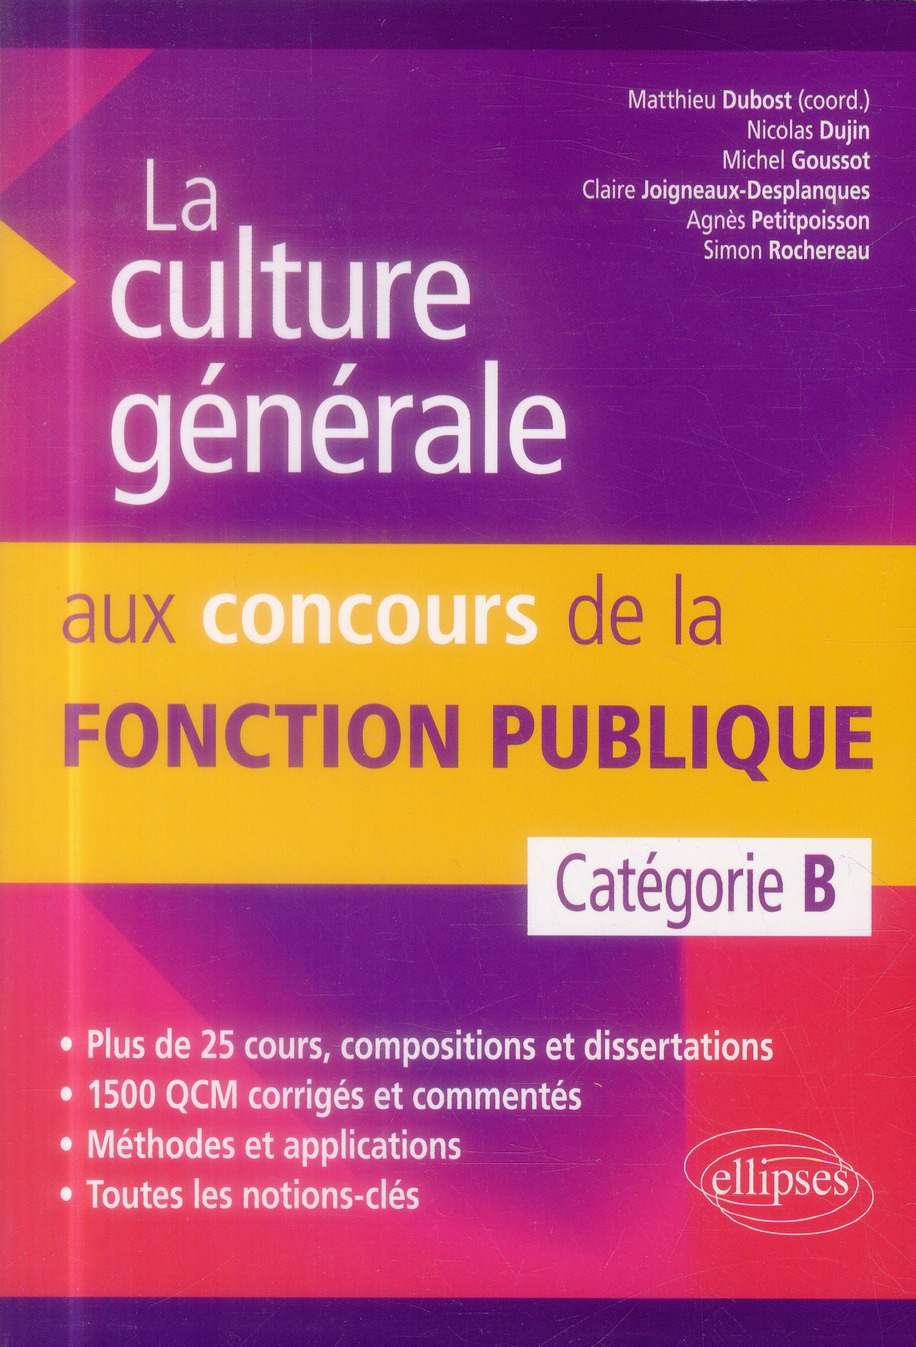 LA CULTURE GENERALE AUX CONCOURS DE LA FONCTION PUBLIQUE DE CATEGORIE B